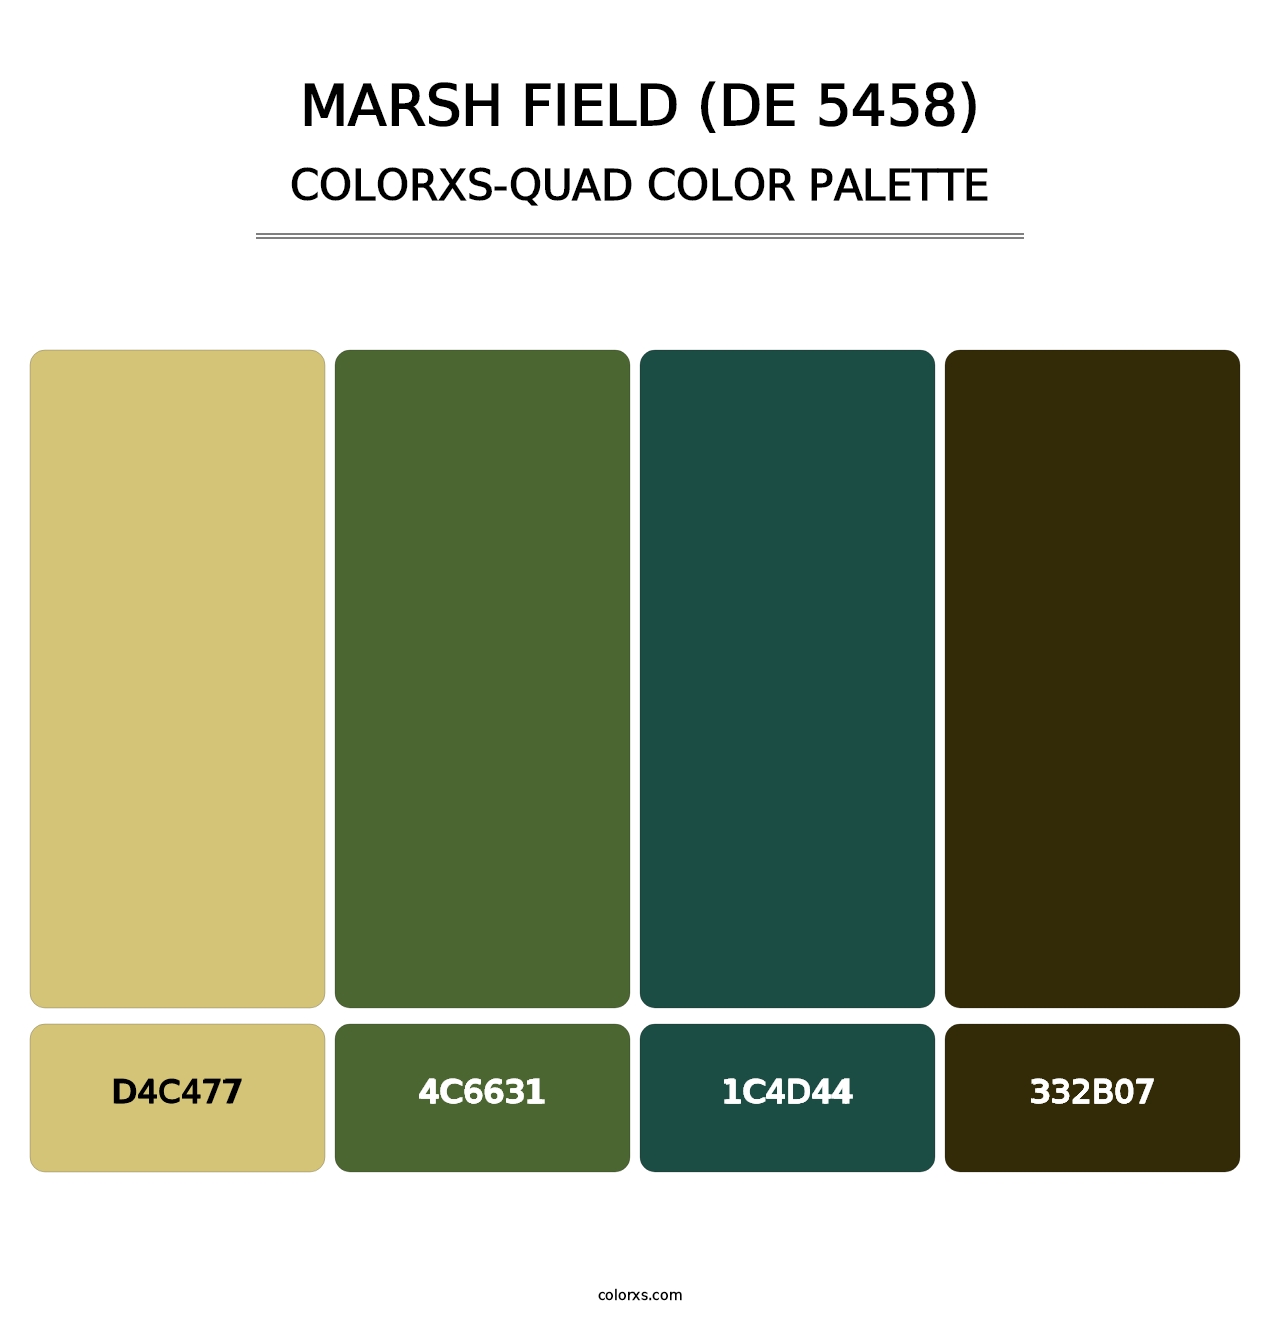 Marsh Field (DE 5458) - Colorxs Quad Palette